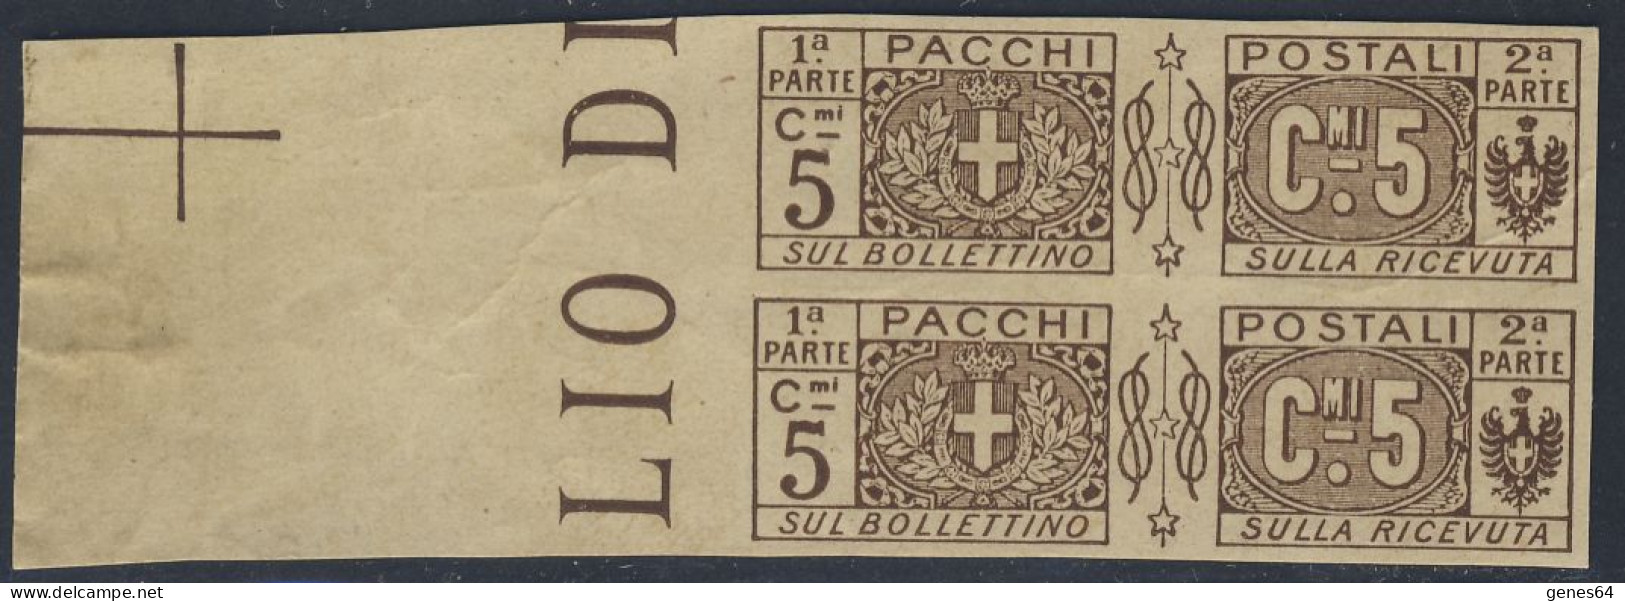 1914/22 - Prova Di Stampa Su Carta Sottile 5 C. Bruno Coppia Bordo Di Foglio - Non Comune - 2 Foto (vedi Descrizione) - Paketmarken